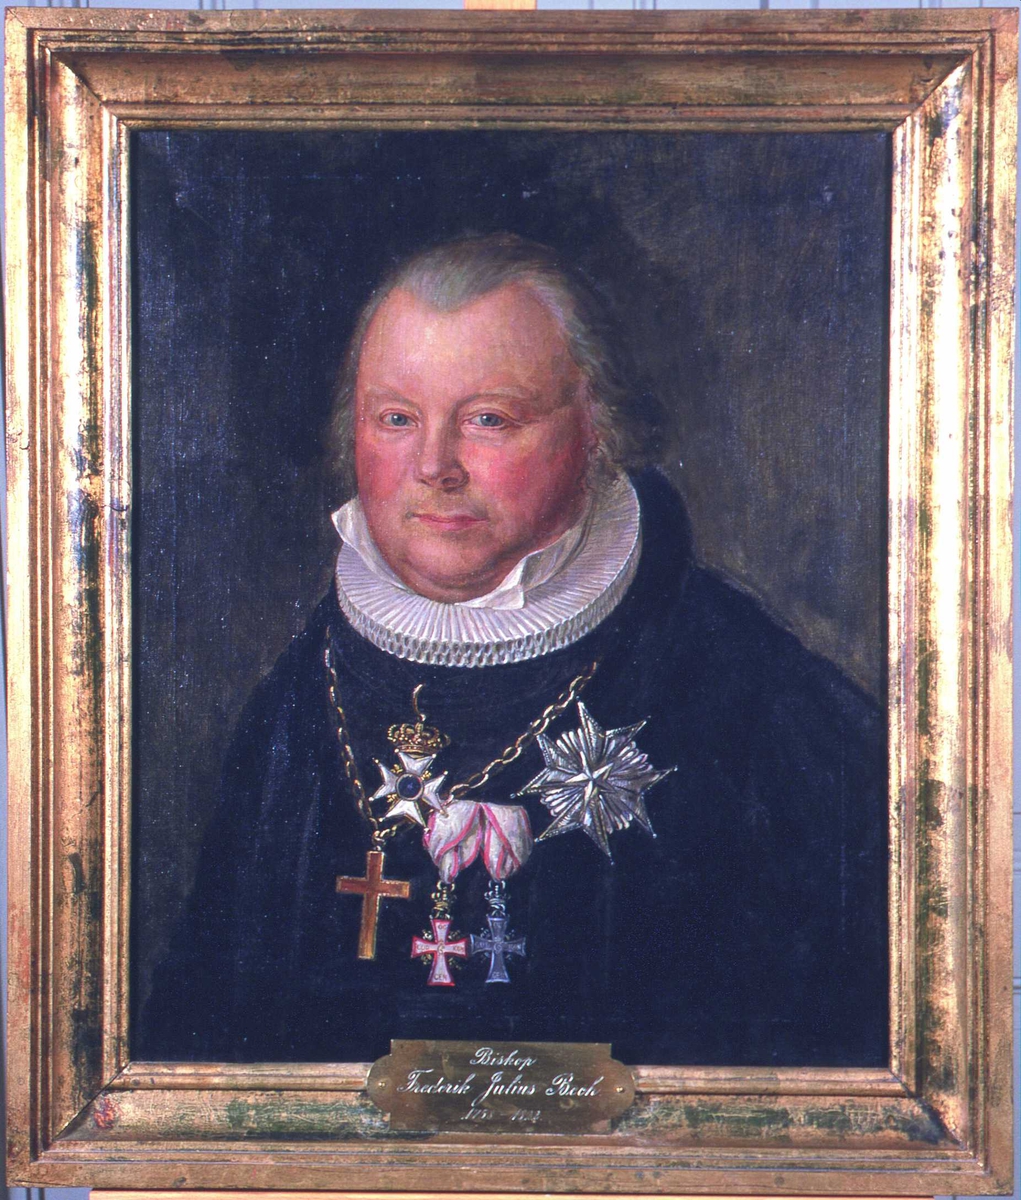 Portrett av biskop Frederik Julius Bech. Grått hår. Kledd i prestekappe og -krave. Kors og ordener. 